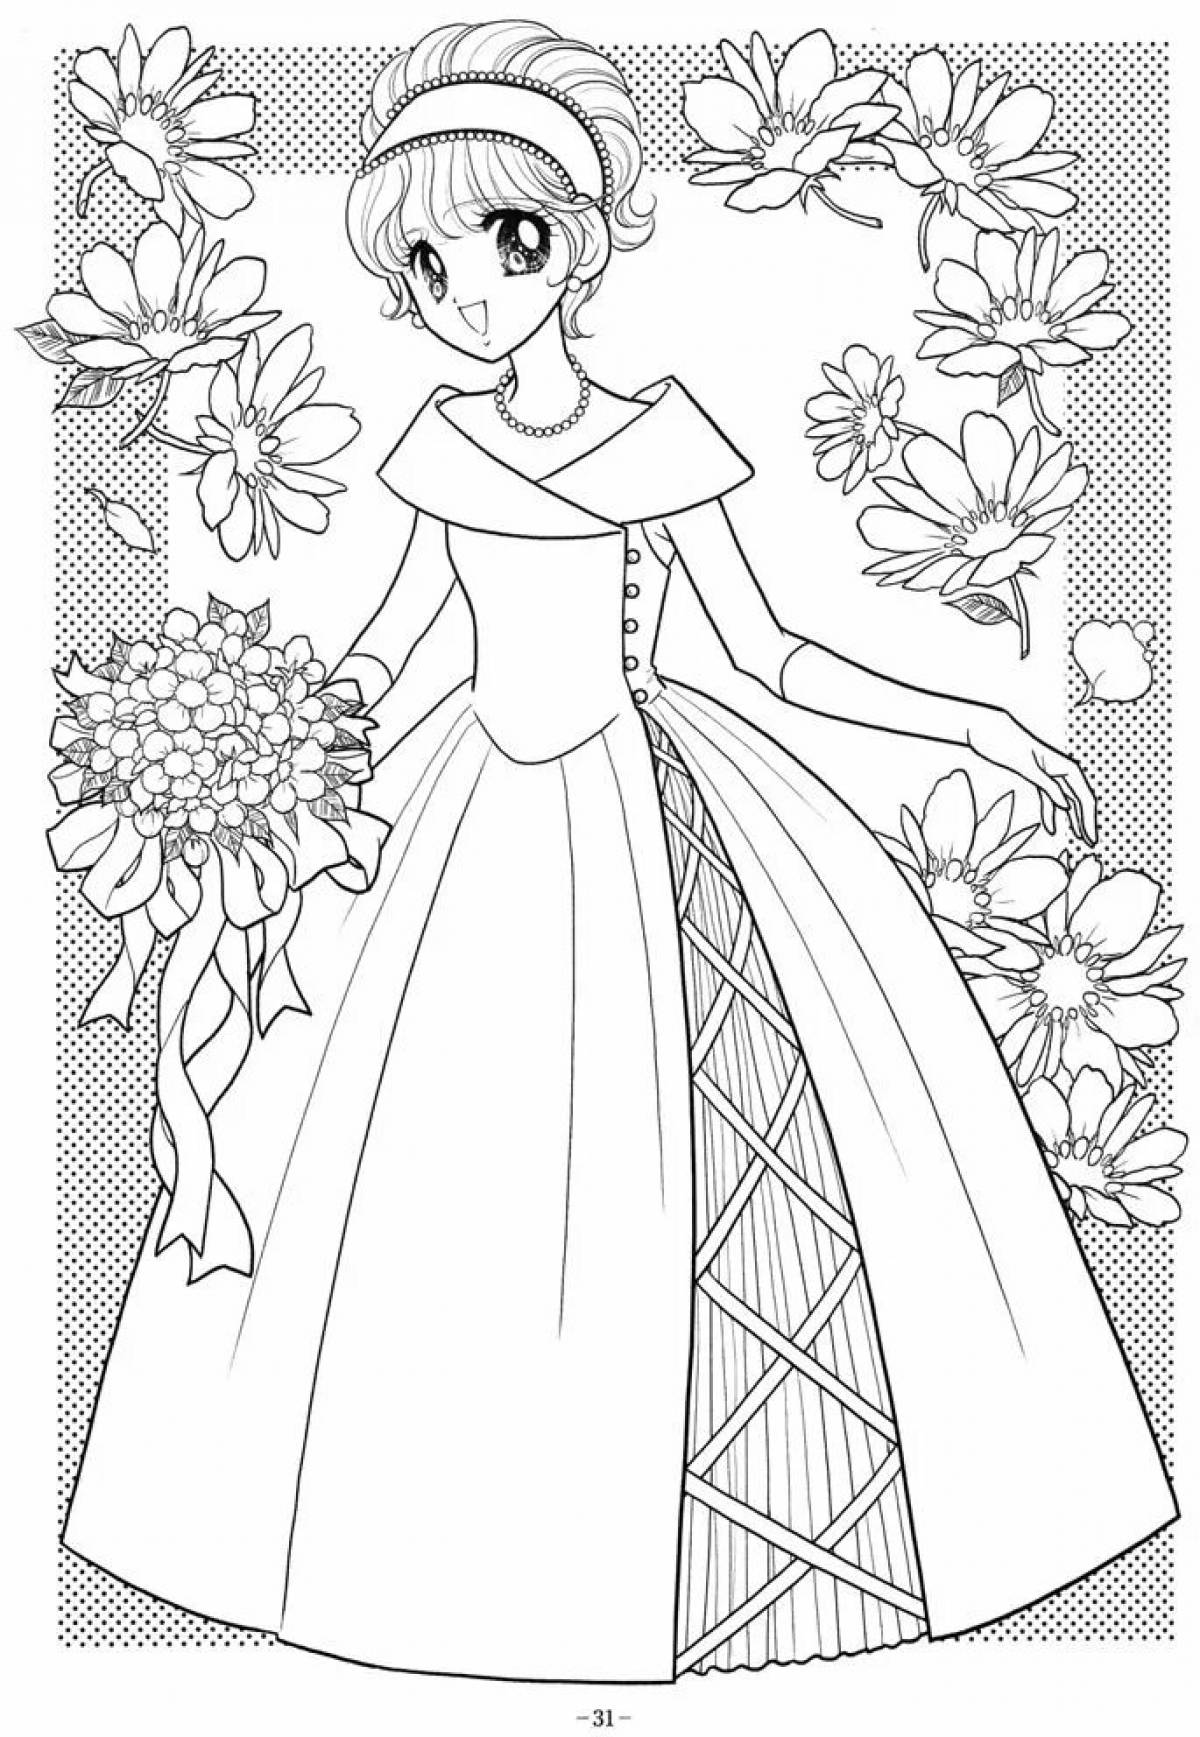 Generous coloring for girls princesses in beautiful dresses